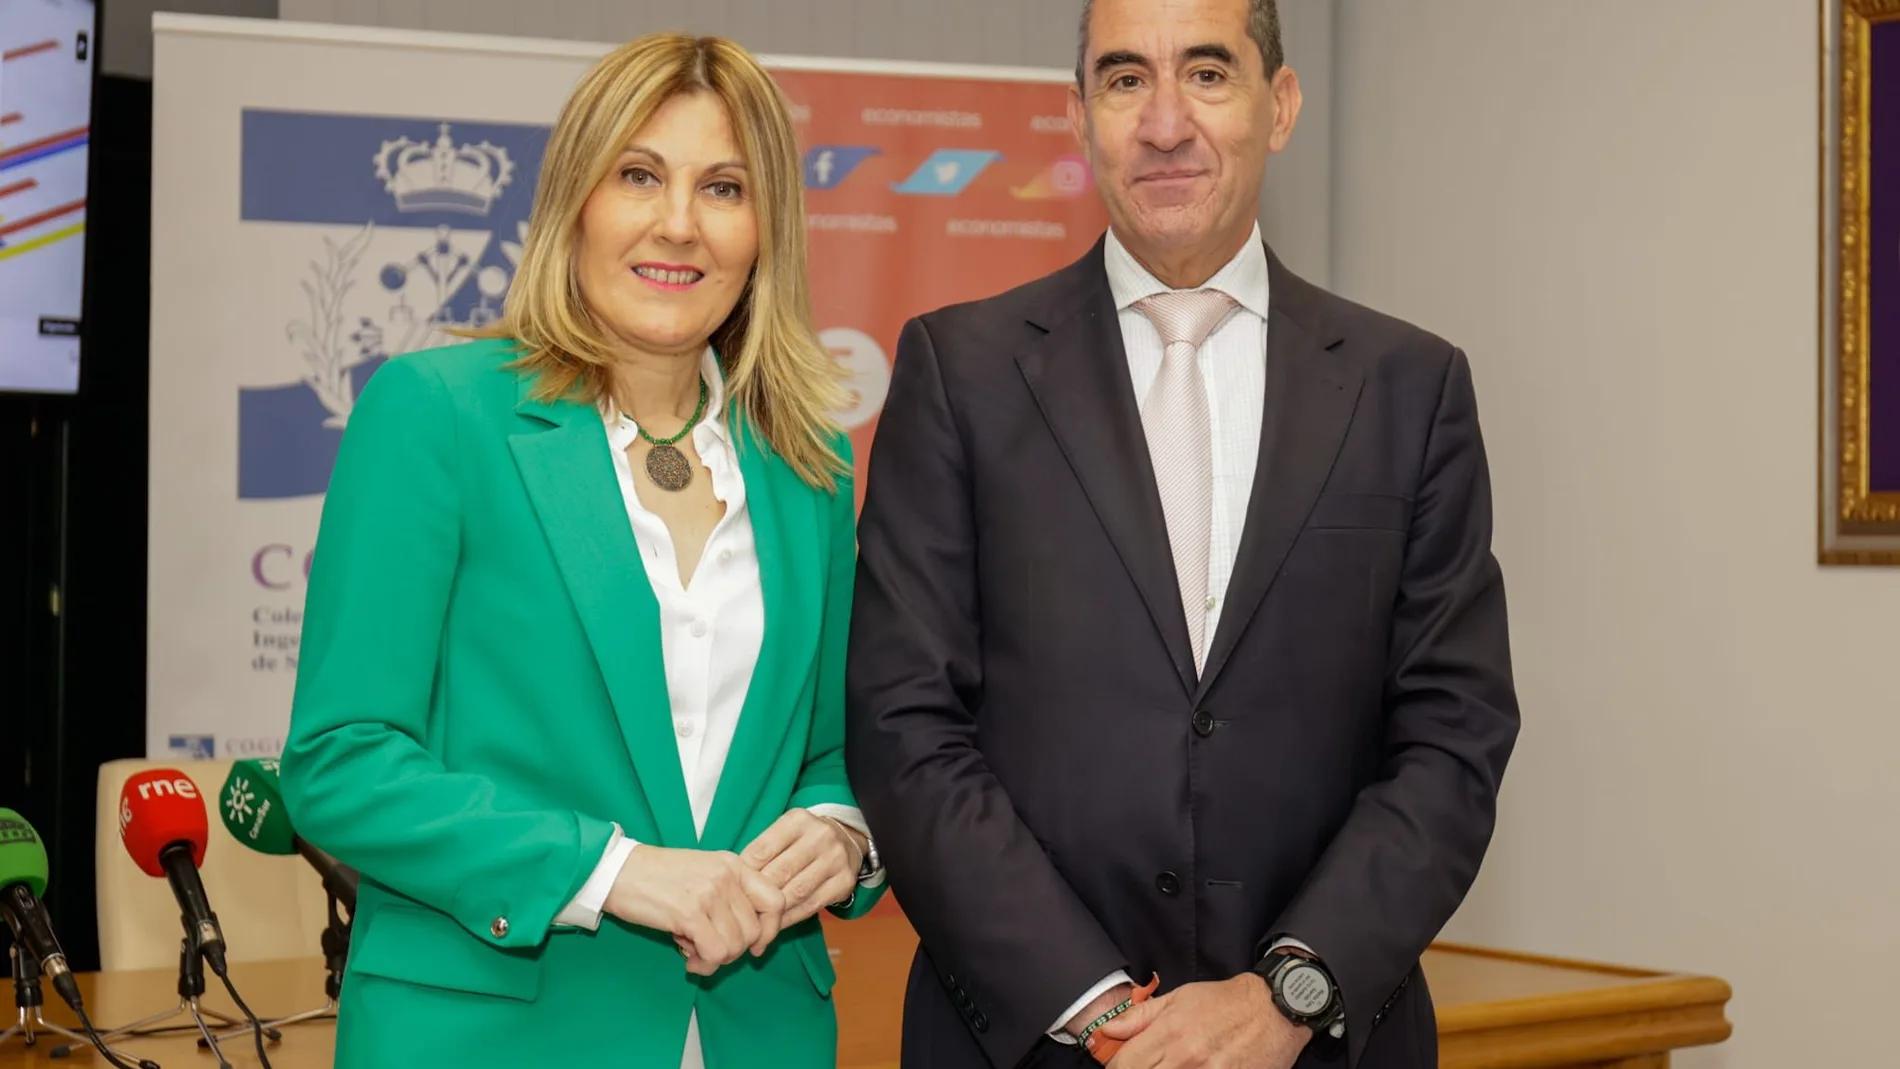  Ana Jáuregui, decana de COGITISE y vicepresidenta de COGITI, y Francisco José Tato, decano del Colegio de Economistas de Sevilla.